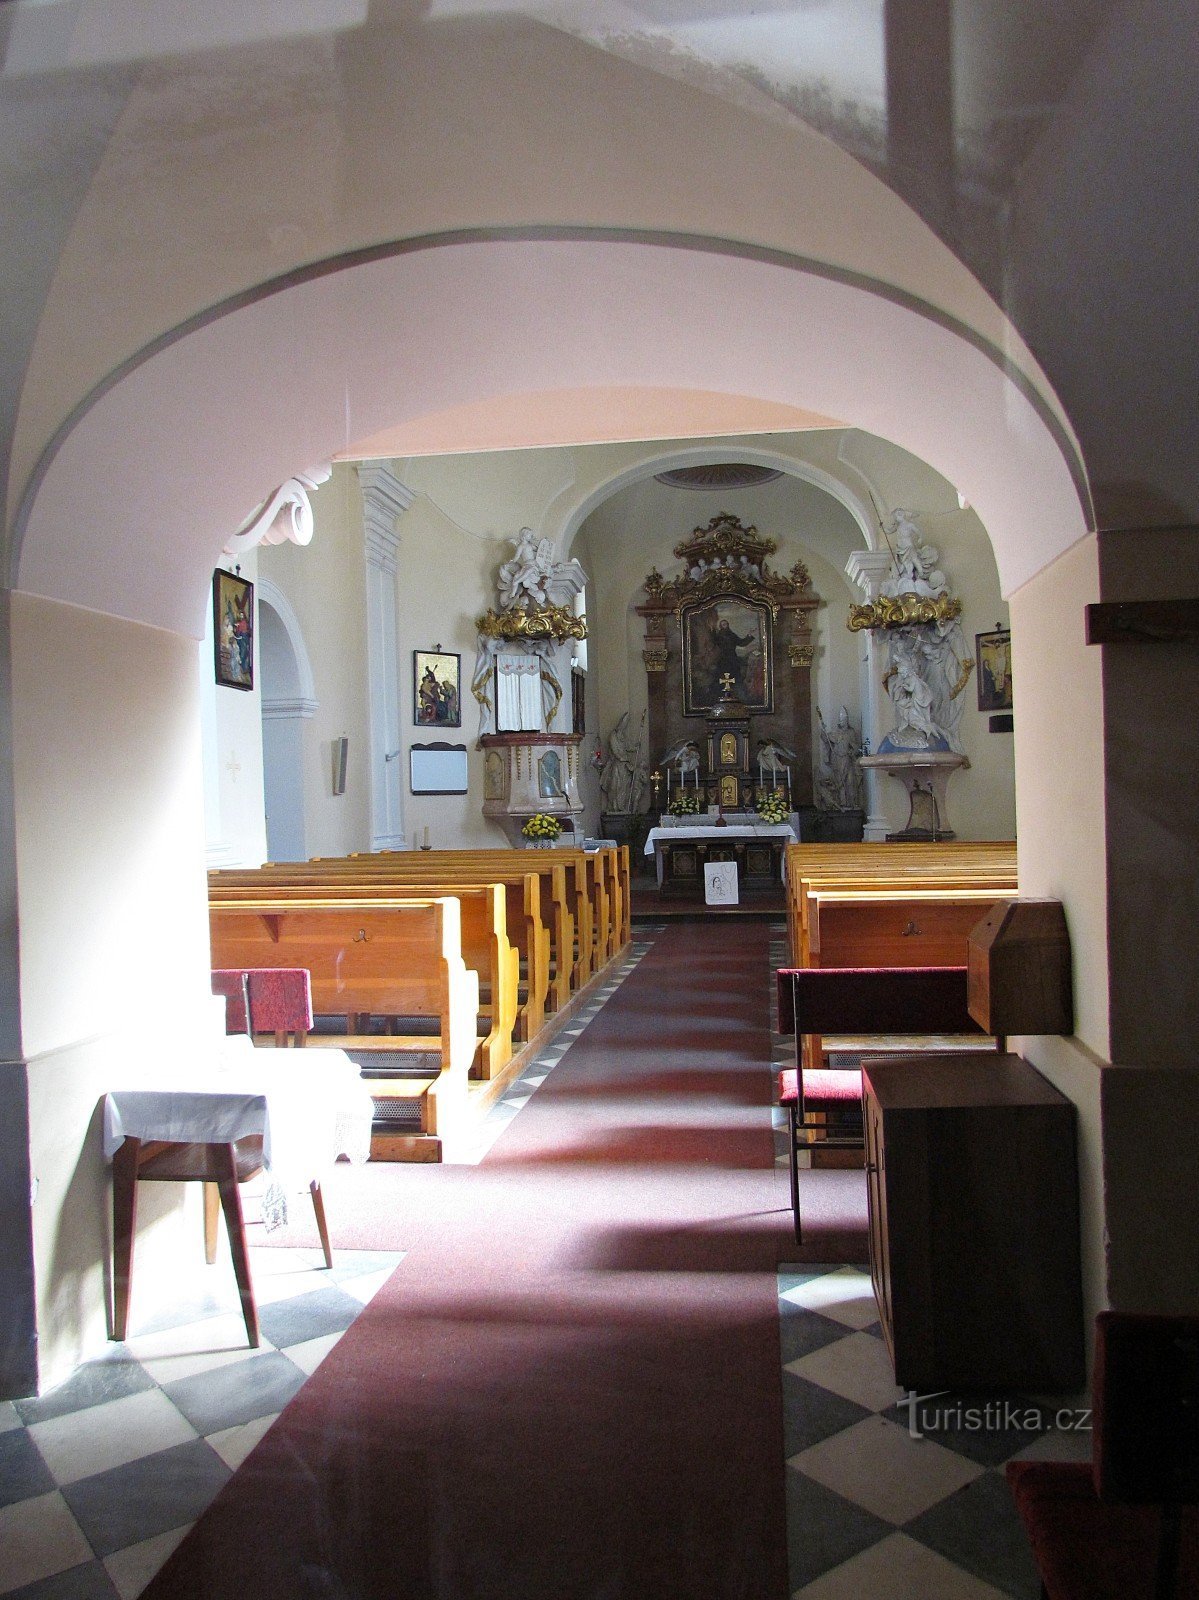 Chropyně - εκκλησία του St. Giljí